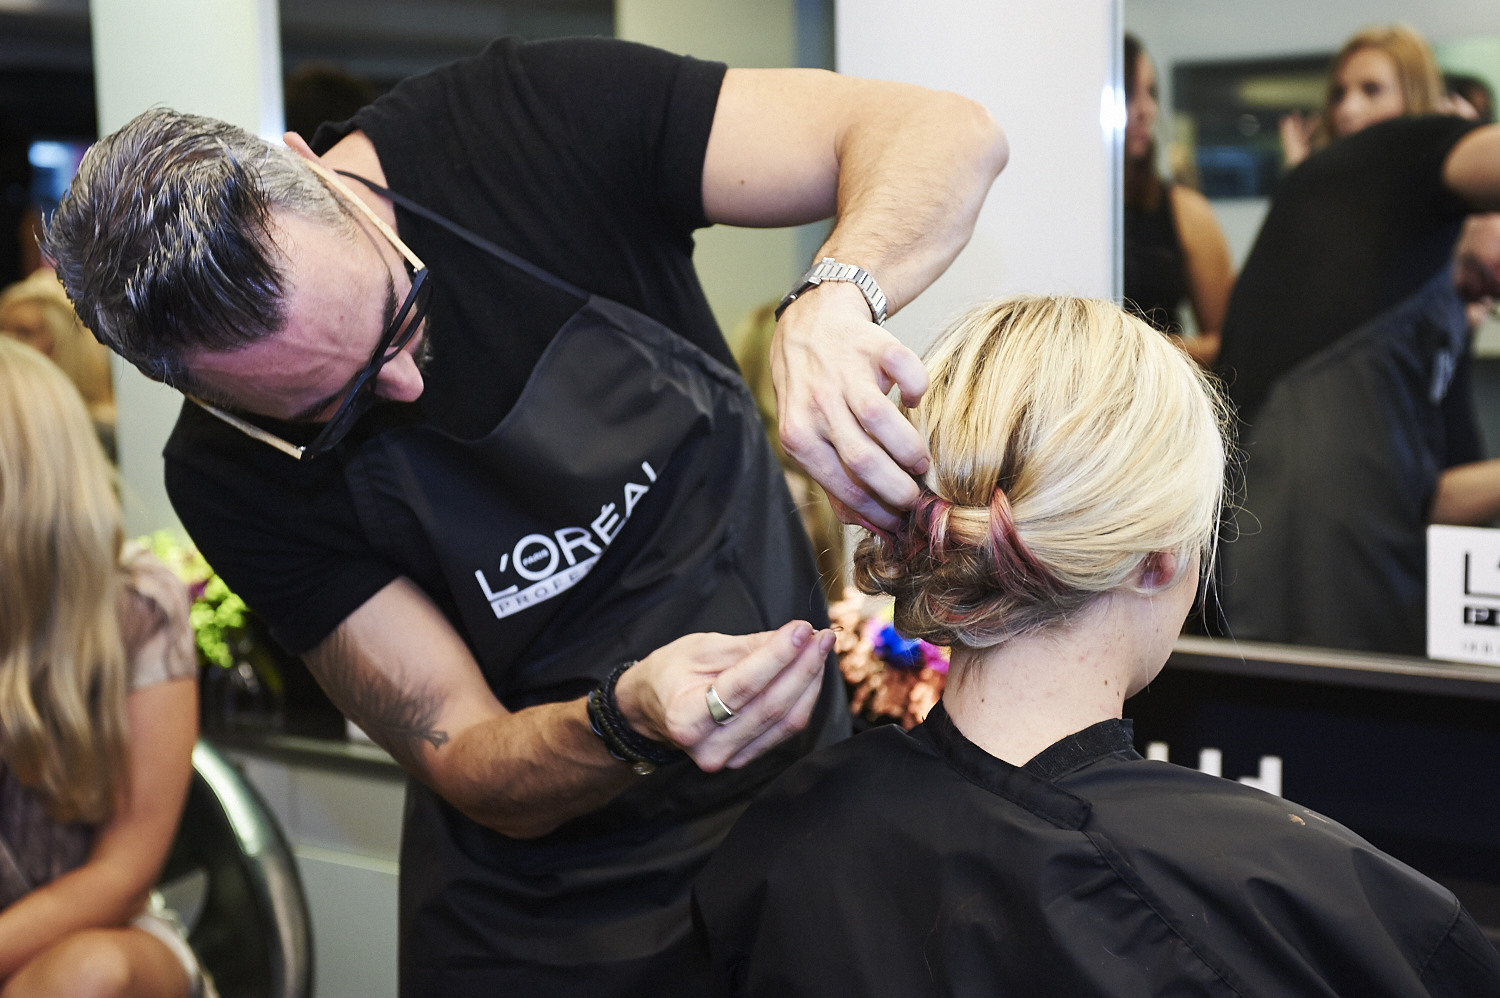 L'Oréal Professionnel Hairchalk launch 2014 (29).jpg